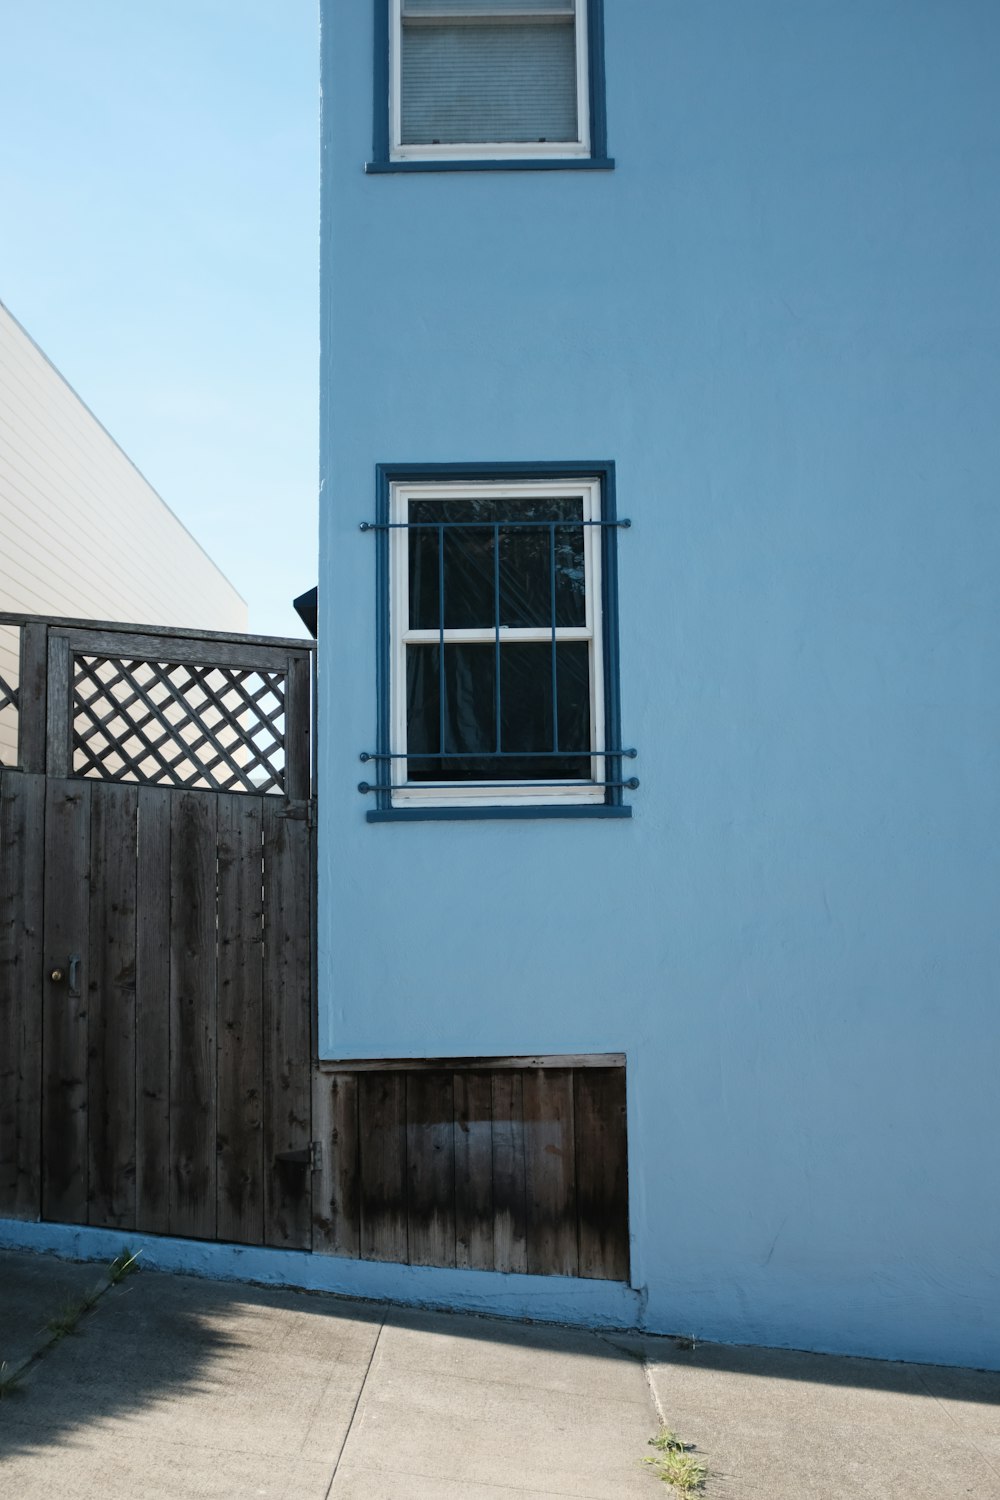 Edificio pintado de azul con ventana de vidrio enmarcada en blanco